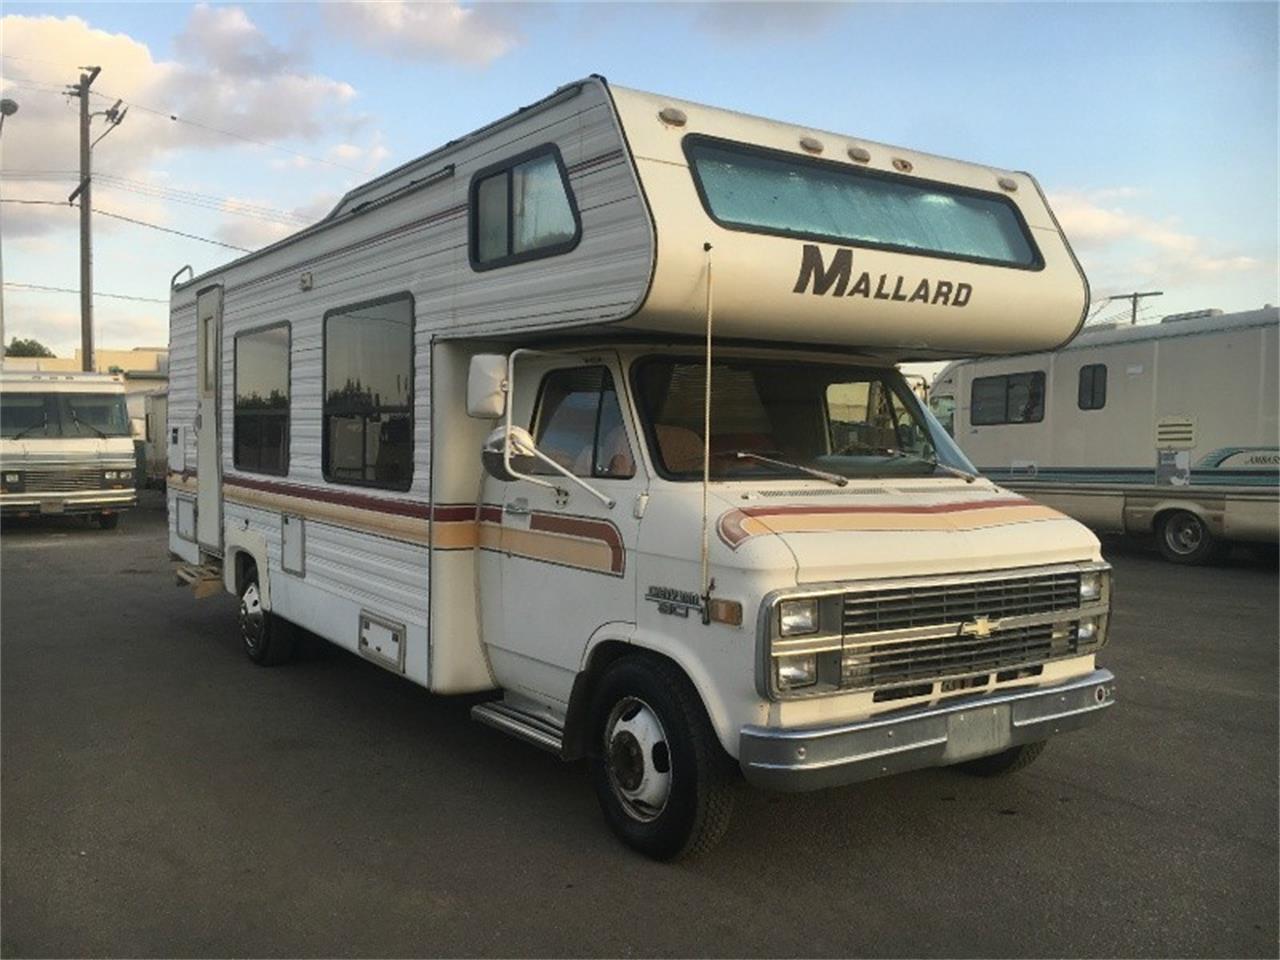 1984 mallard travel trailer weight